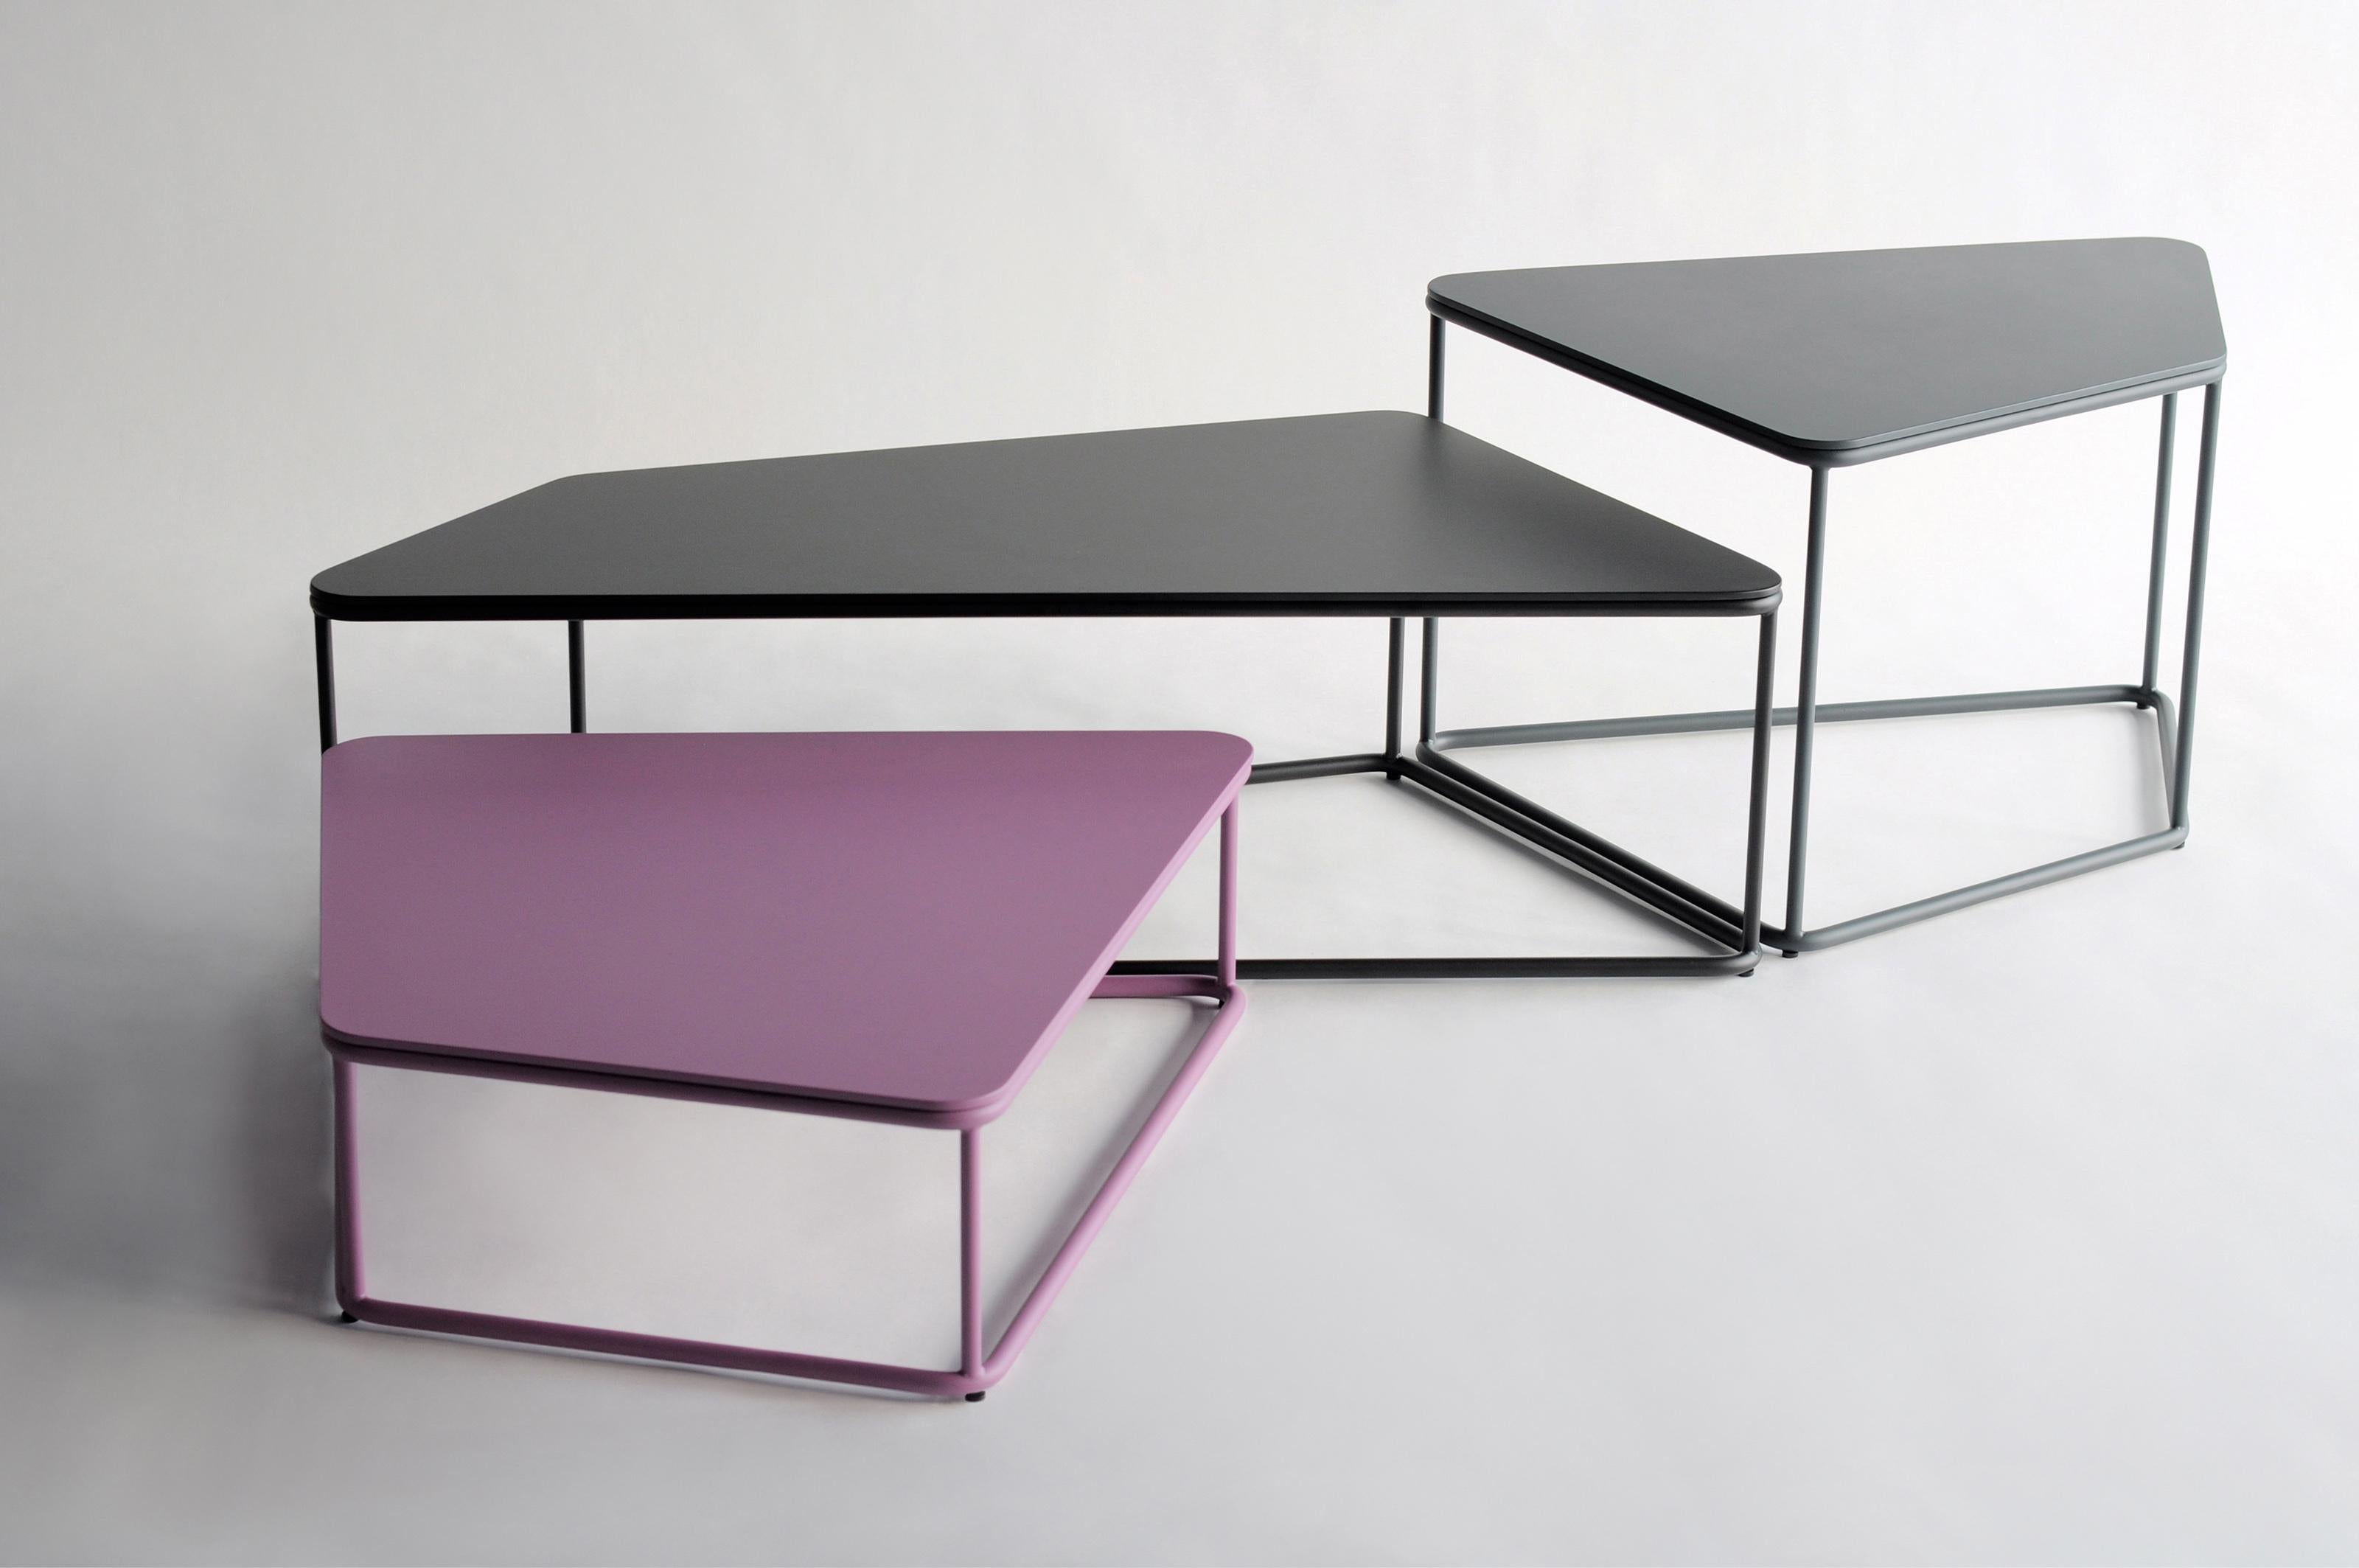 Ensemble de 3 tables Pangaea par Phase Design
Dimensions : P 85,7 x L 129,5 x H 40,6 cm. 
Matériaux : Acier peint par poudrage.

Barres et plaques d'acier massif. L'acier est disponible en blanc brillant ou plat, en noir, en gris, en violet ou en